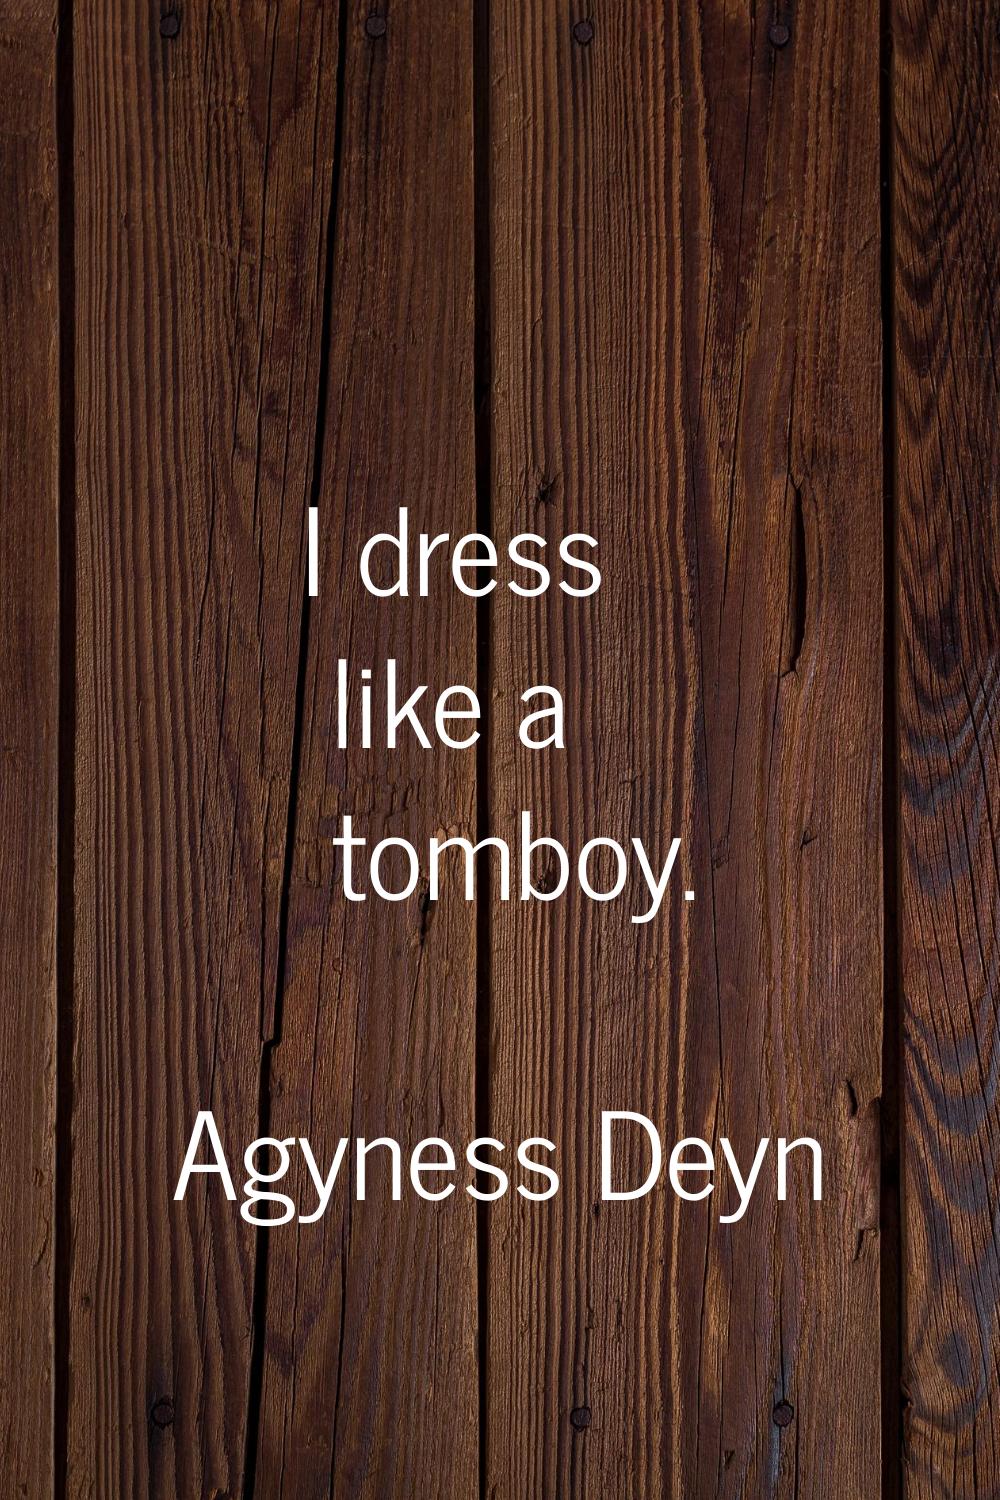 I dress like a tomboy.